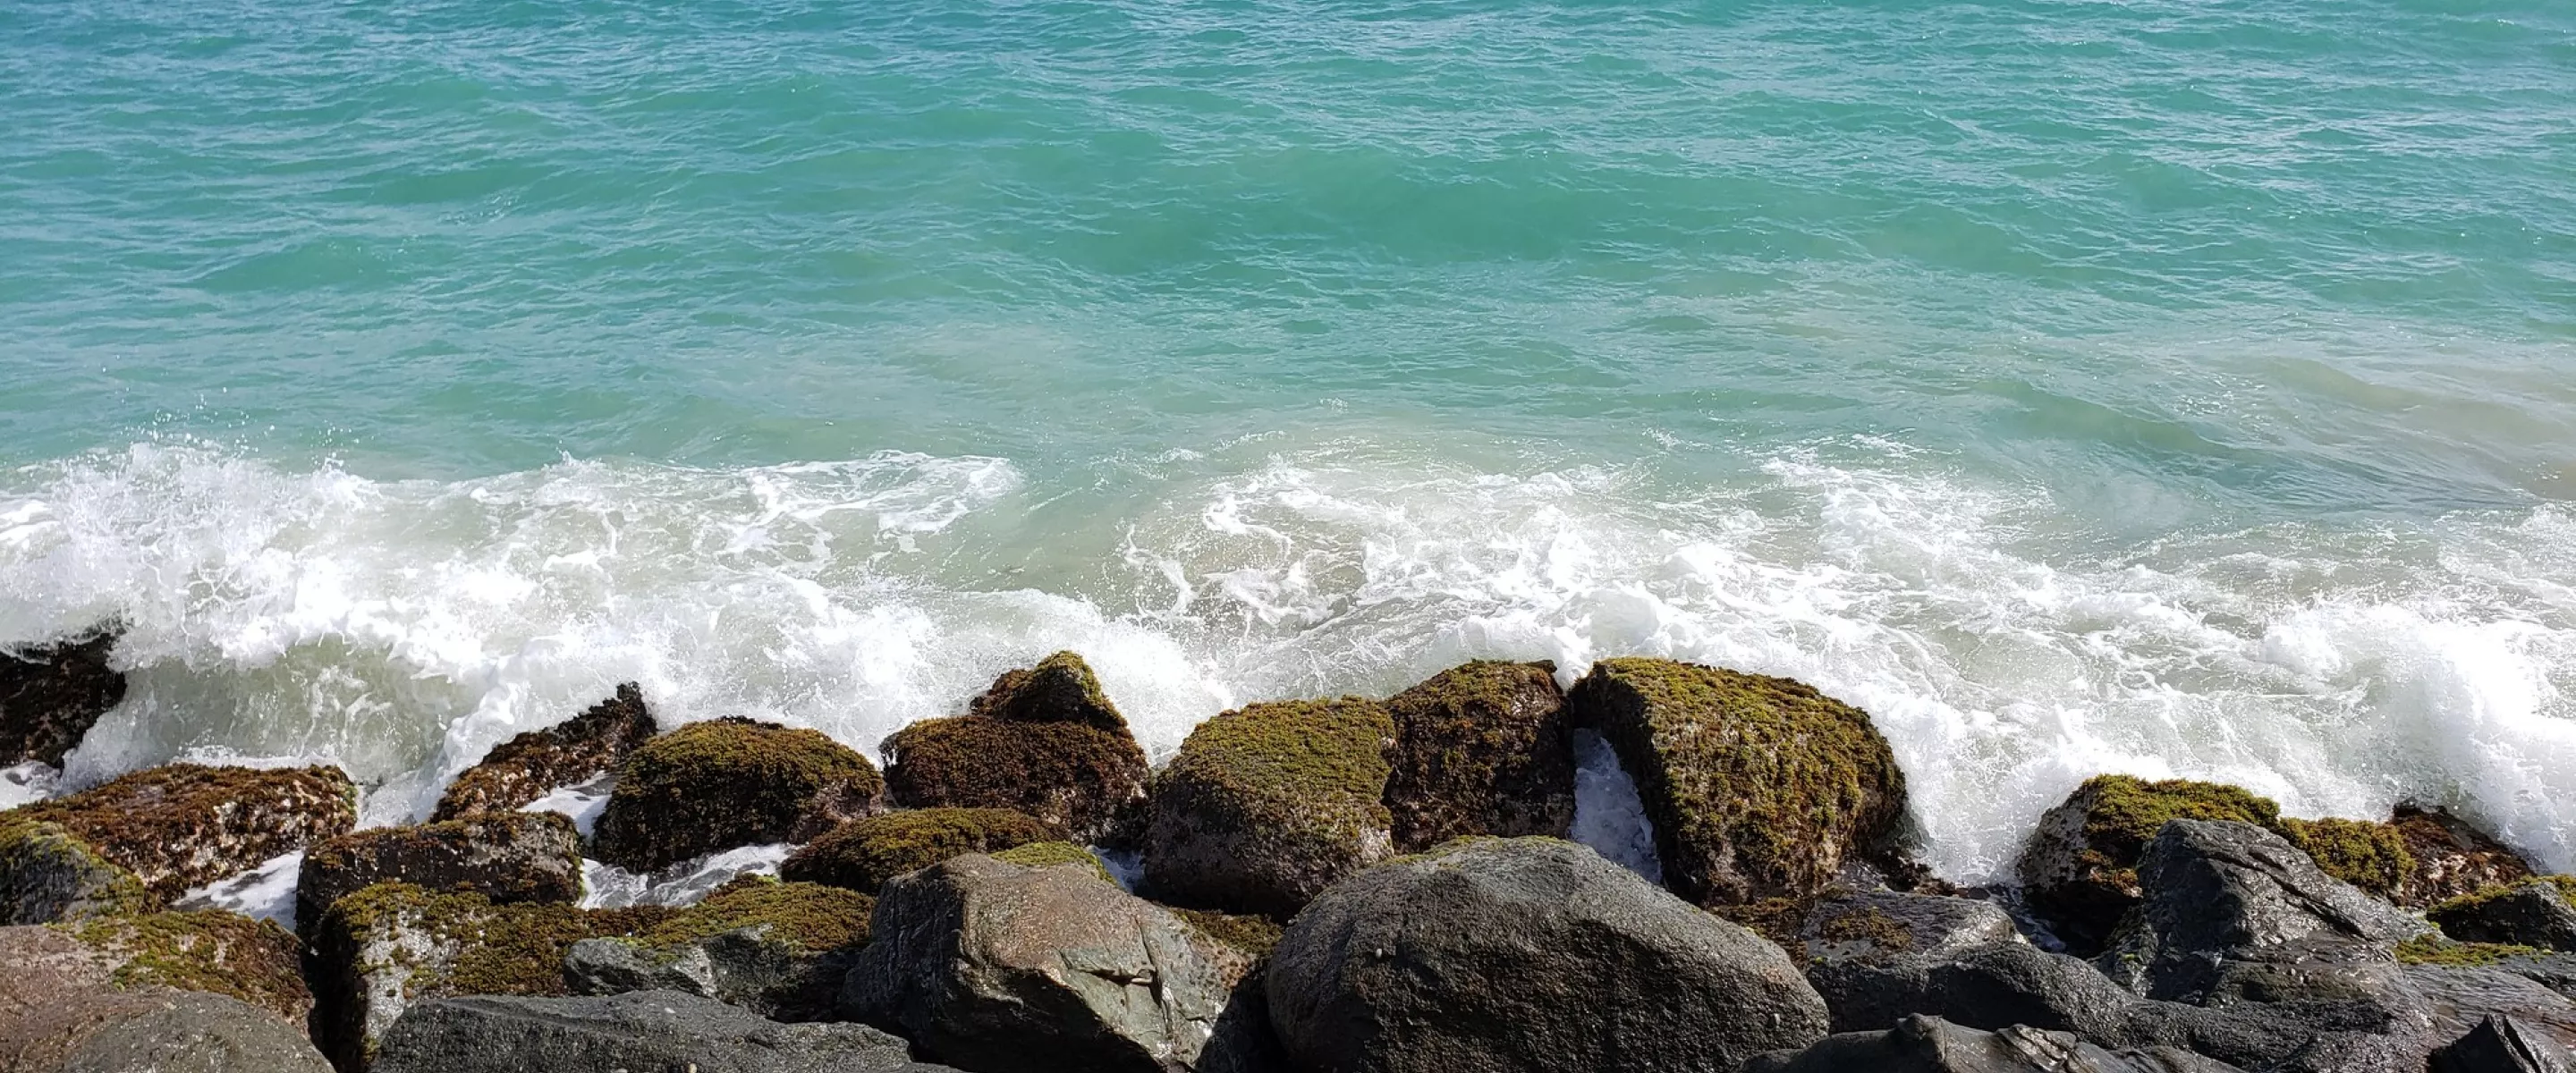 View of the ocean crashing upon rocks